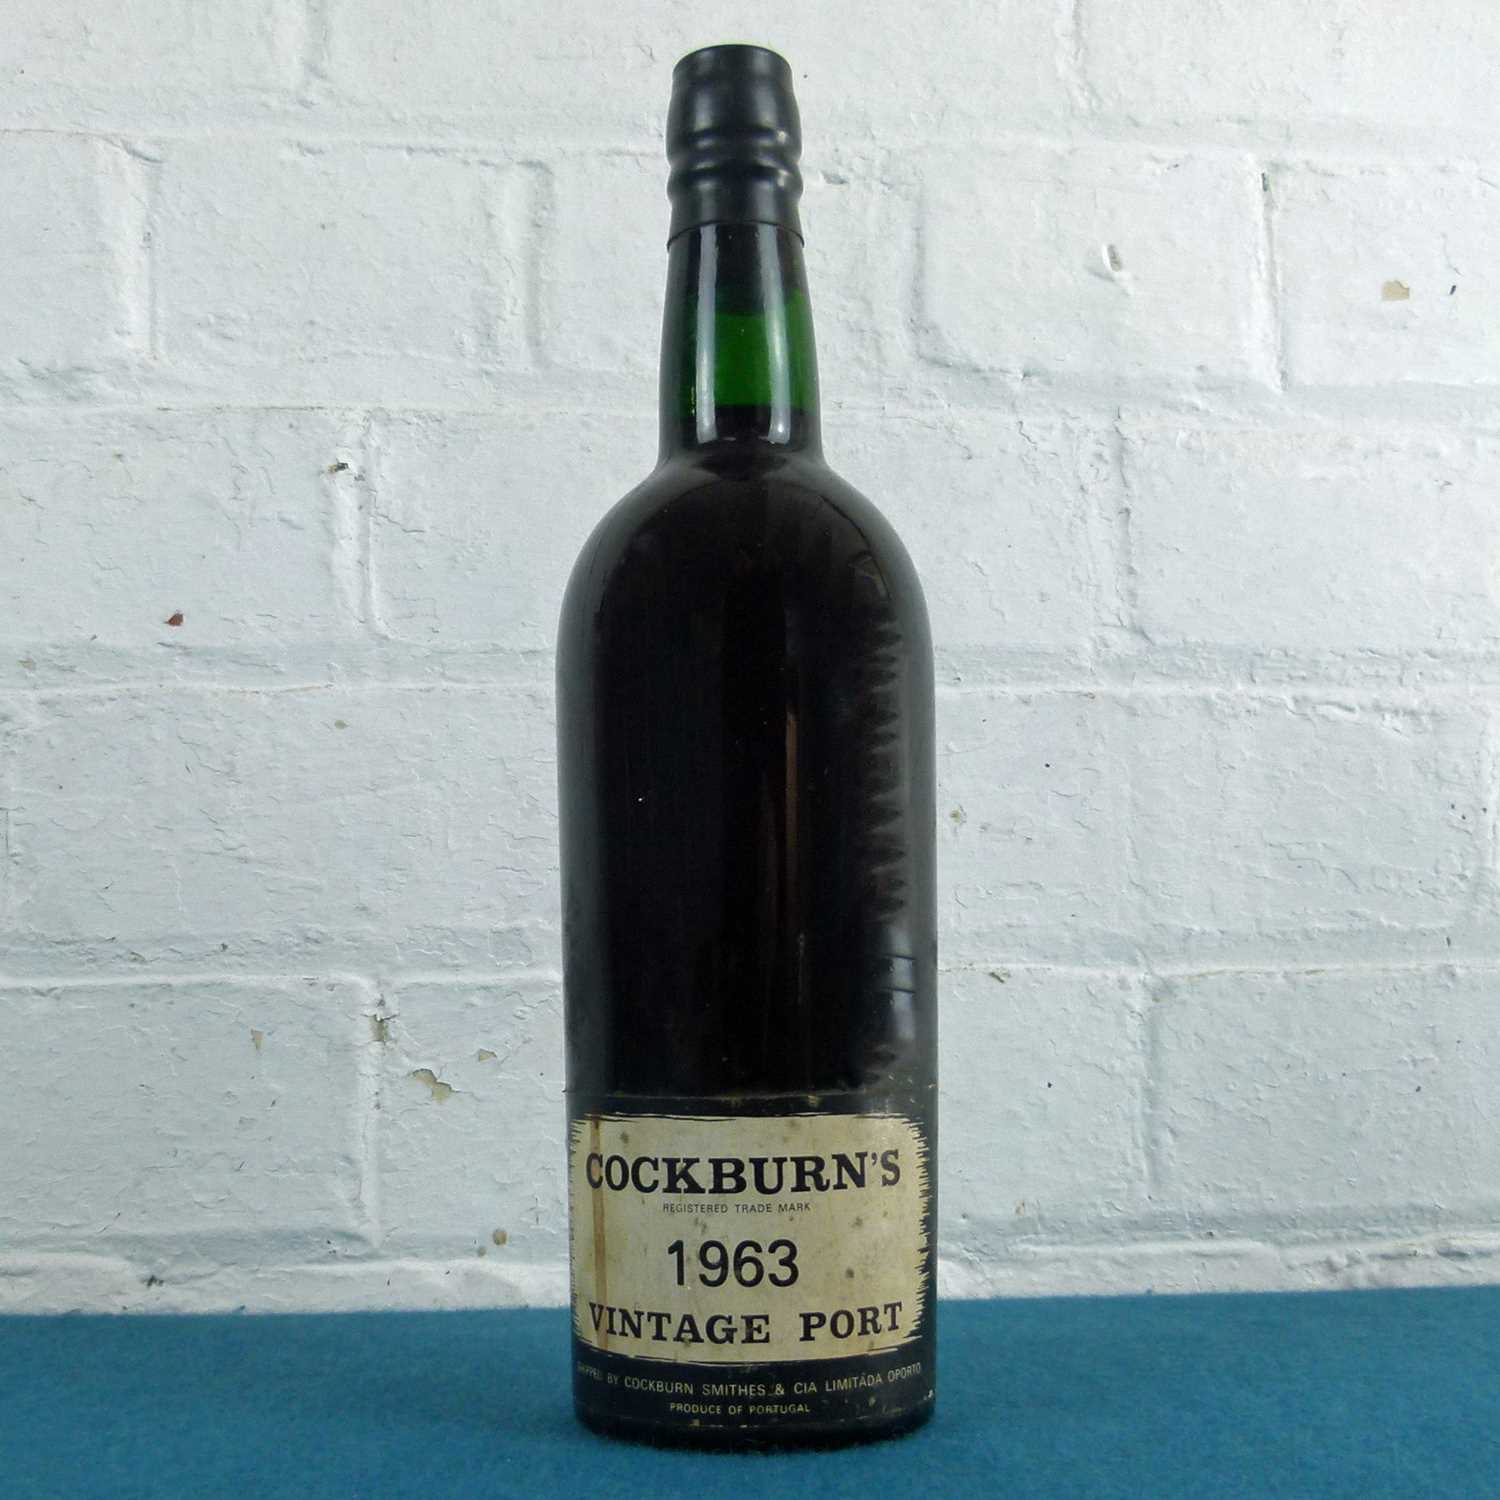 1 Bottle Cockburn’s Vintage Port 1963 (i/n) UK bottled by Cockburn Smithies London